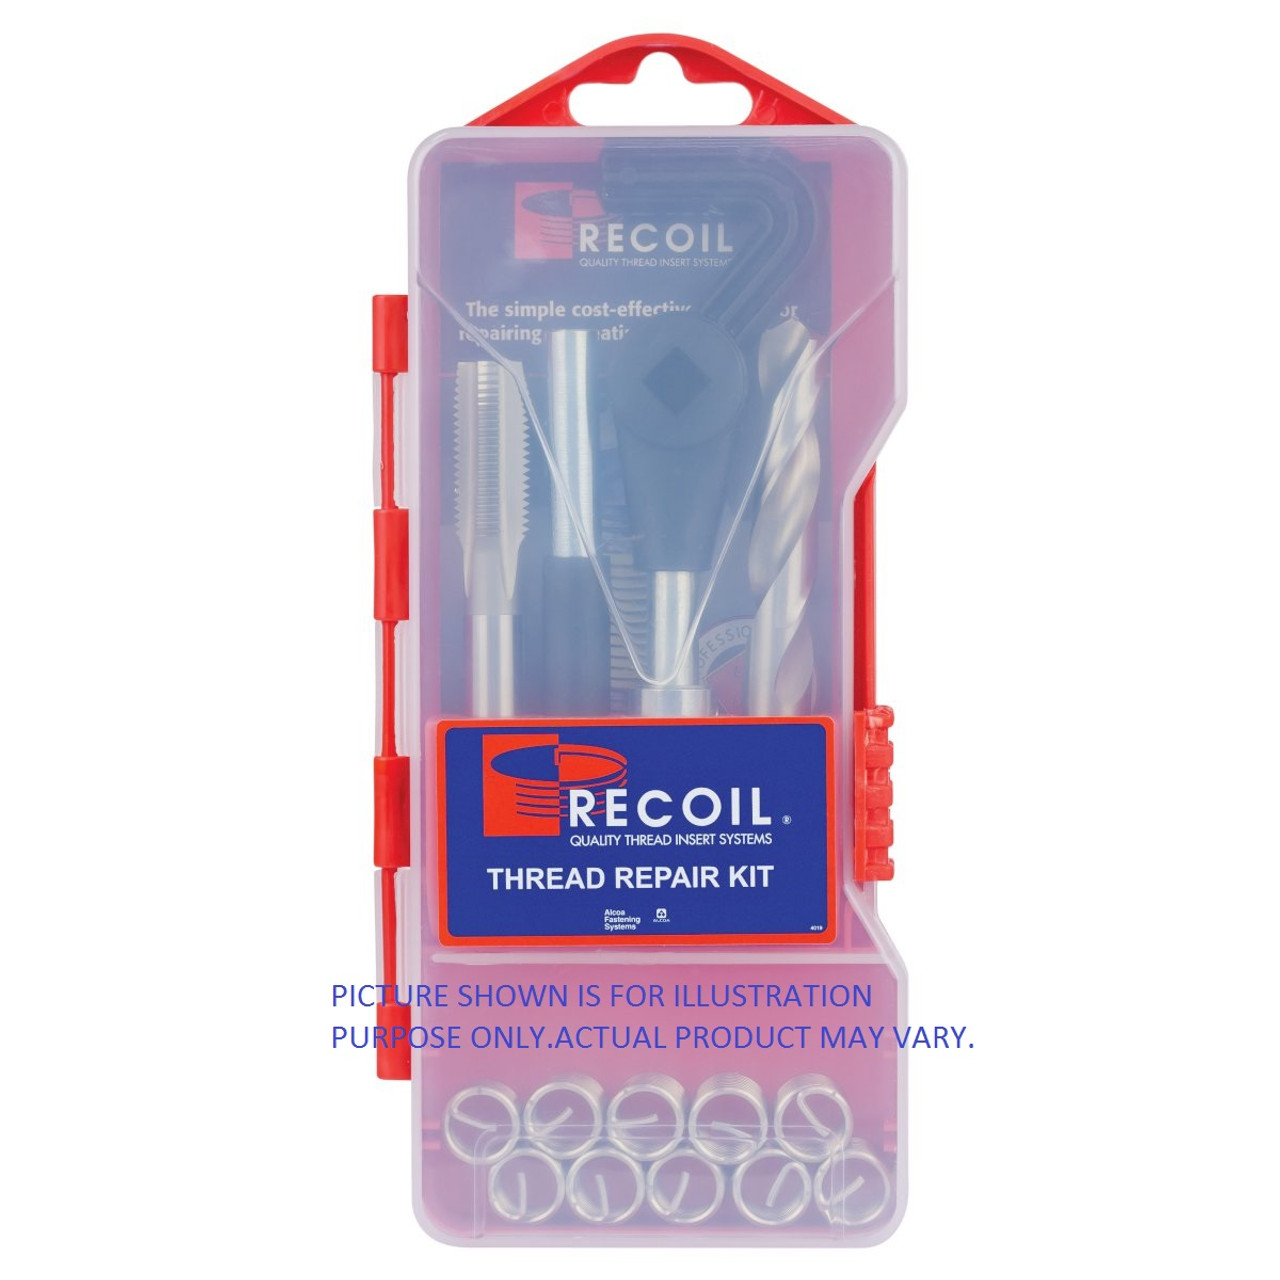 Recoil Kit 7/16-14 Unc Plus Drill Bit